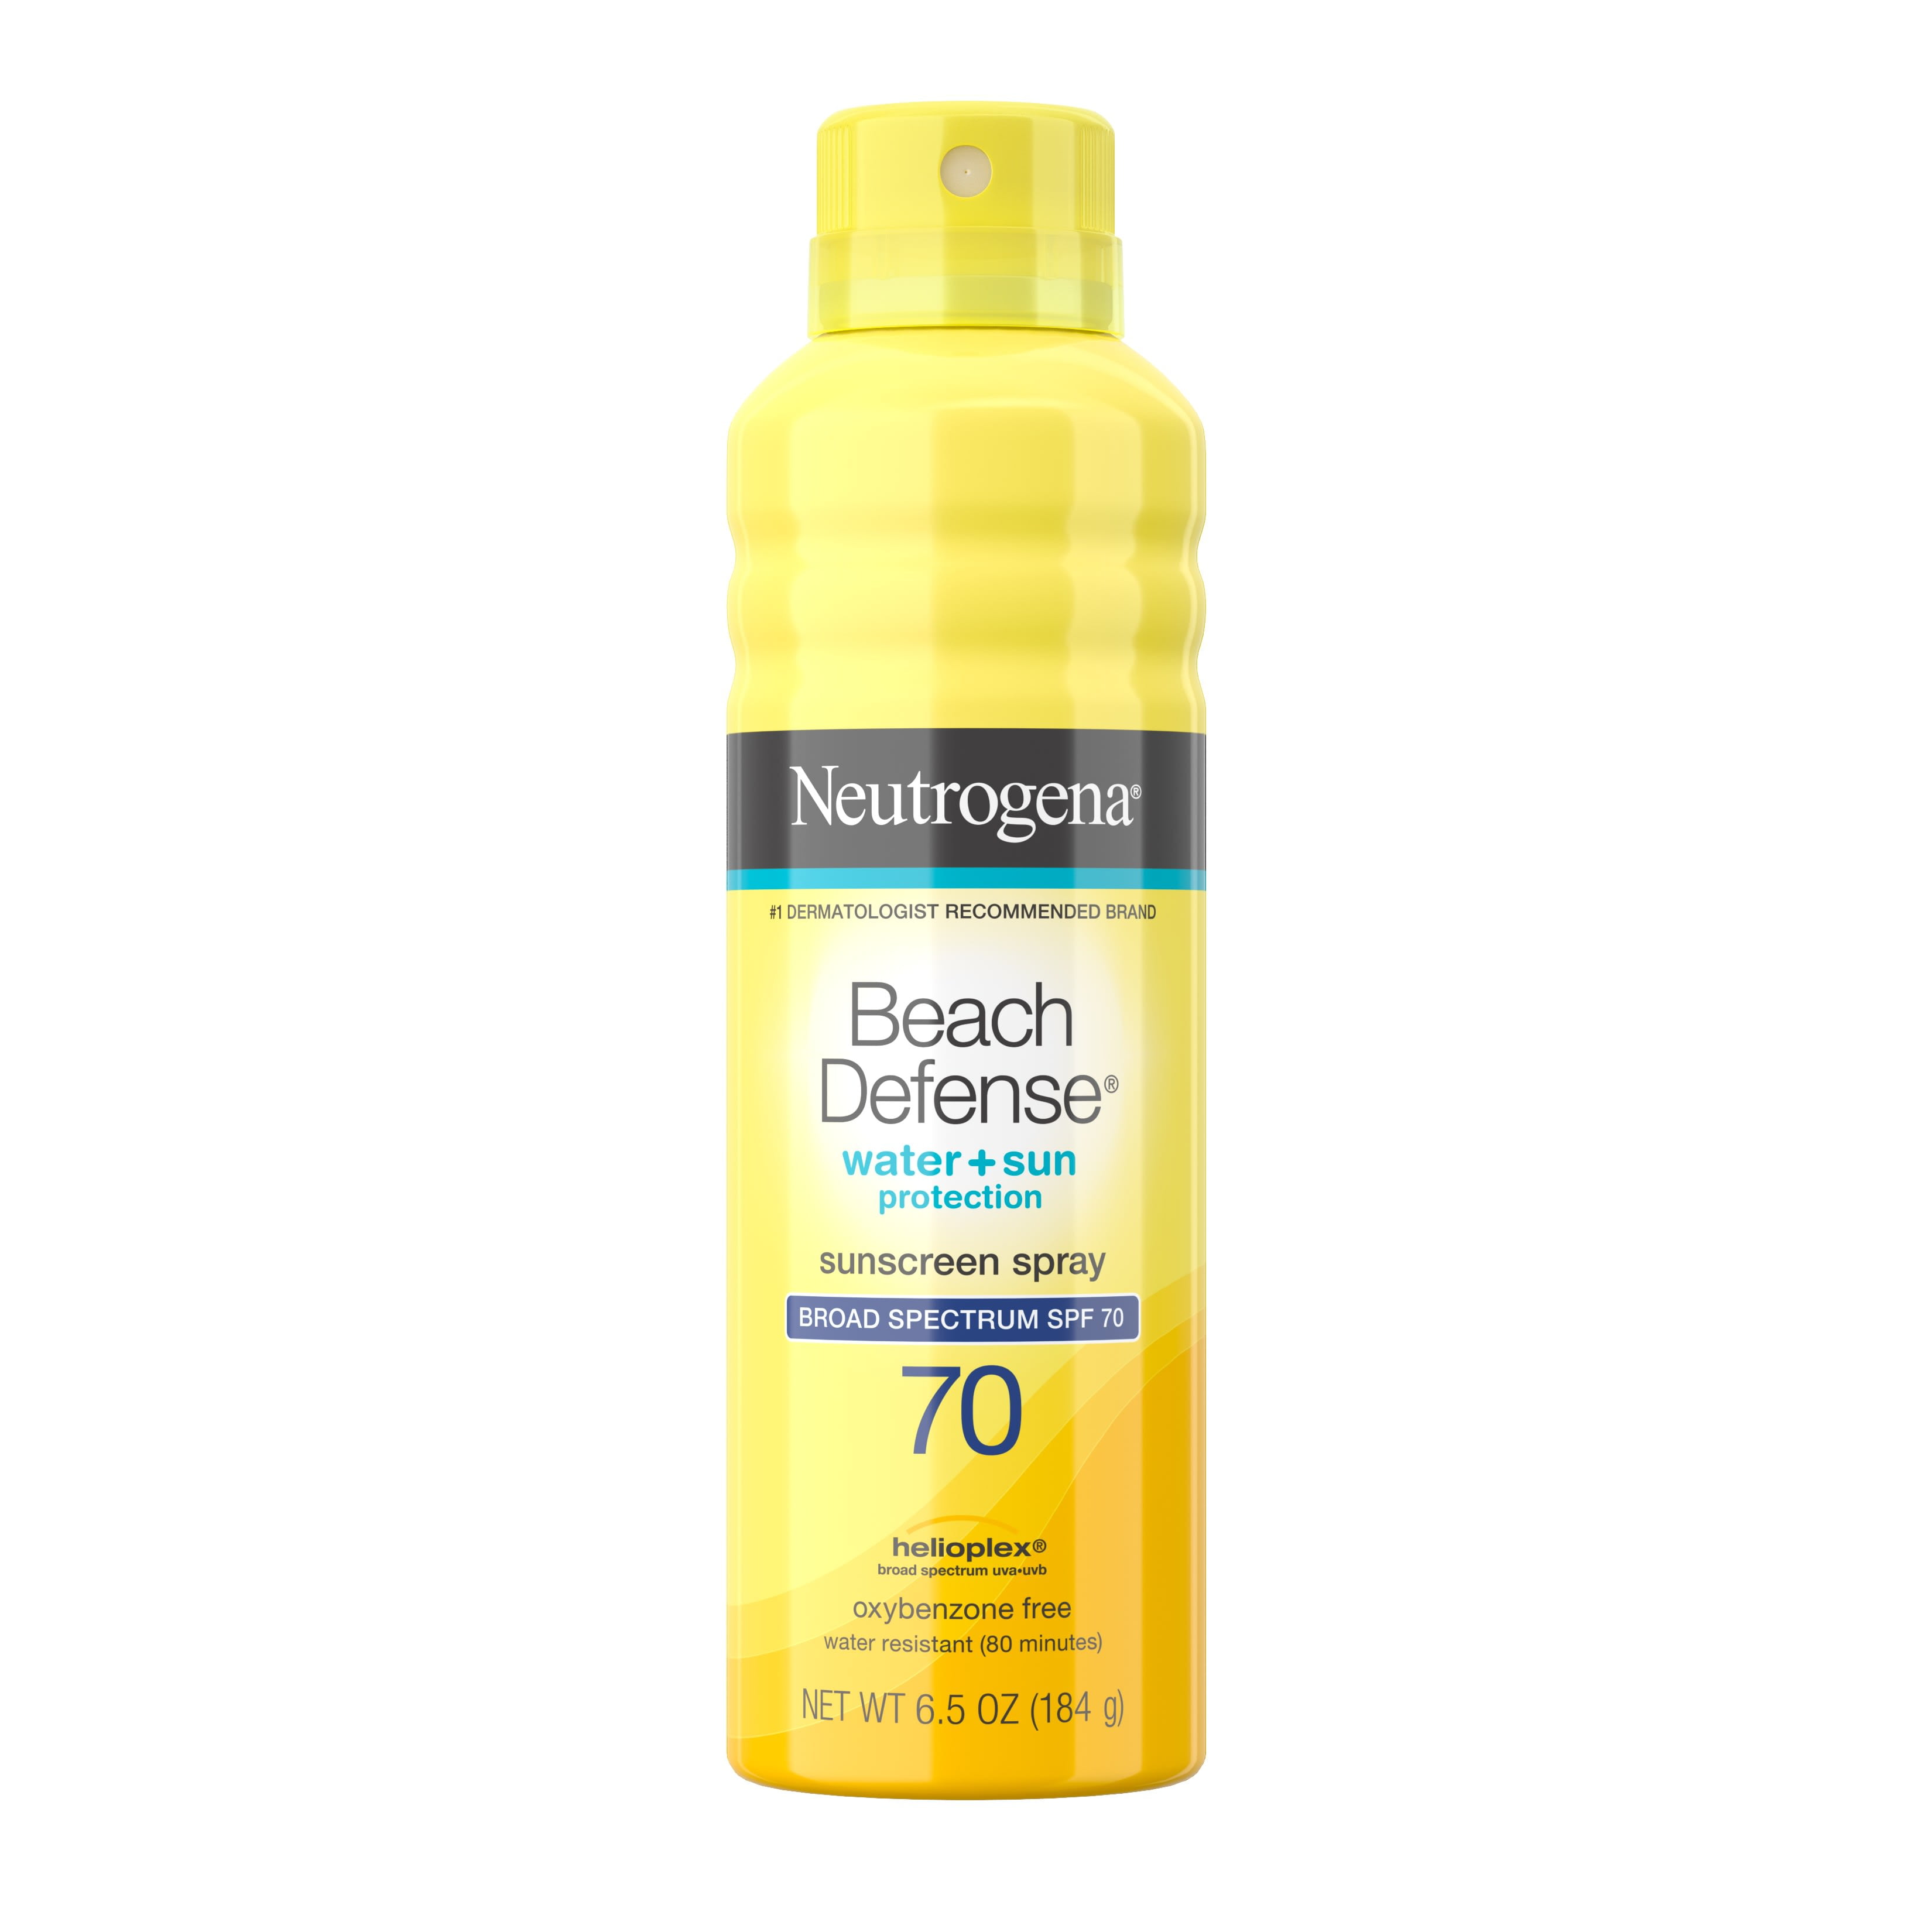 Neutrogena Beach Defense Oil-Free Body Sunscreen Spray, SPF 70, 6.5 oz